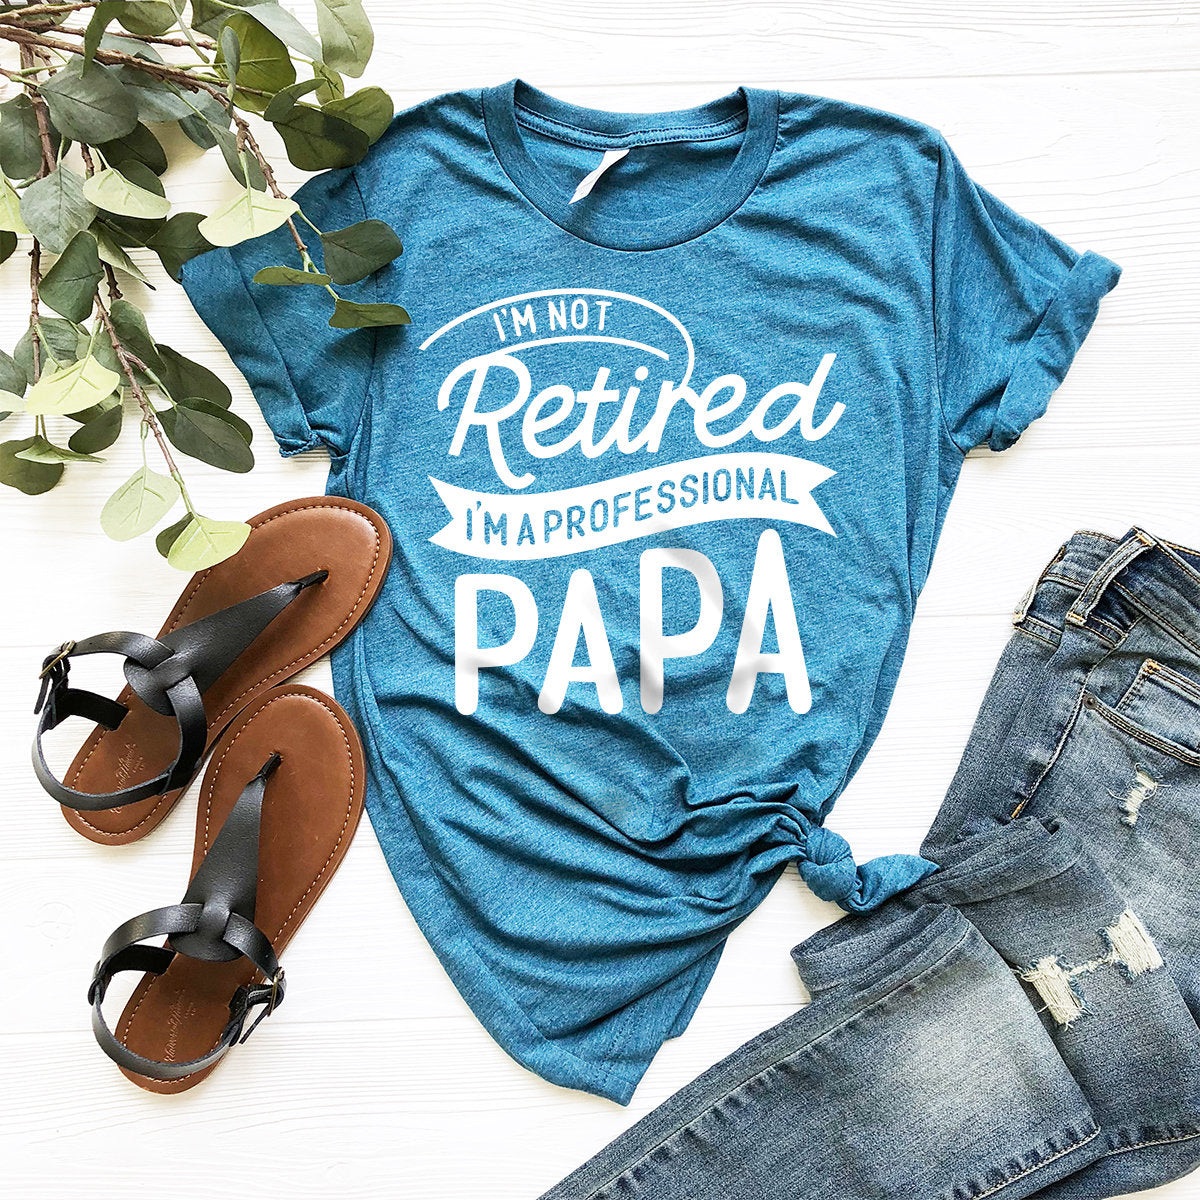 Retired Papa Shirt, Papa T-Shirt, I'm Not Retired I'm Professional Papa Shirt, Grandpa Shirt, Gift For Papa, Grandpa Gift, Funny Grandpa Tee - Fastdeliverytees.com